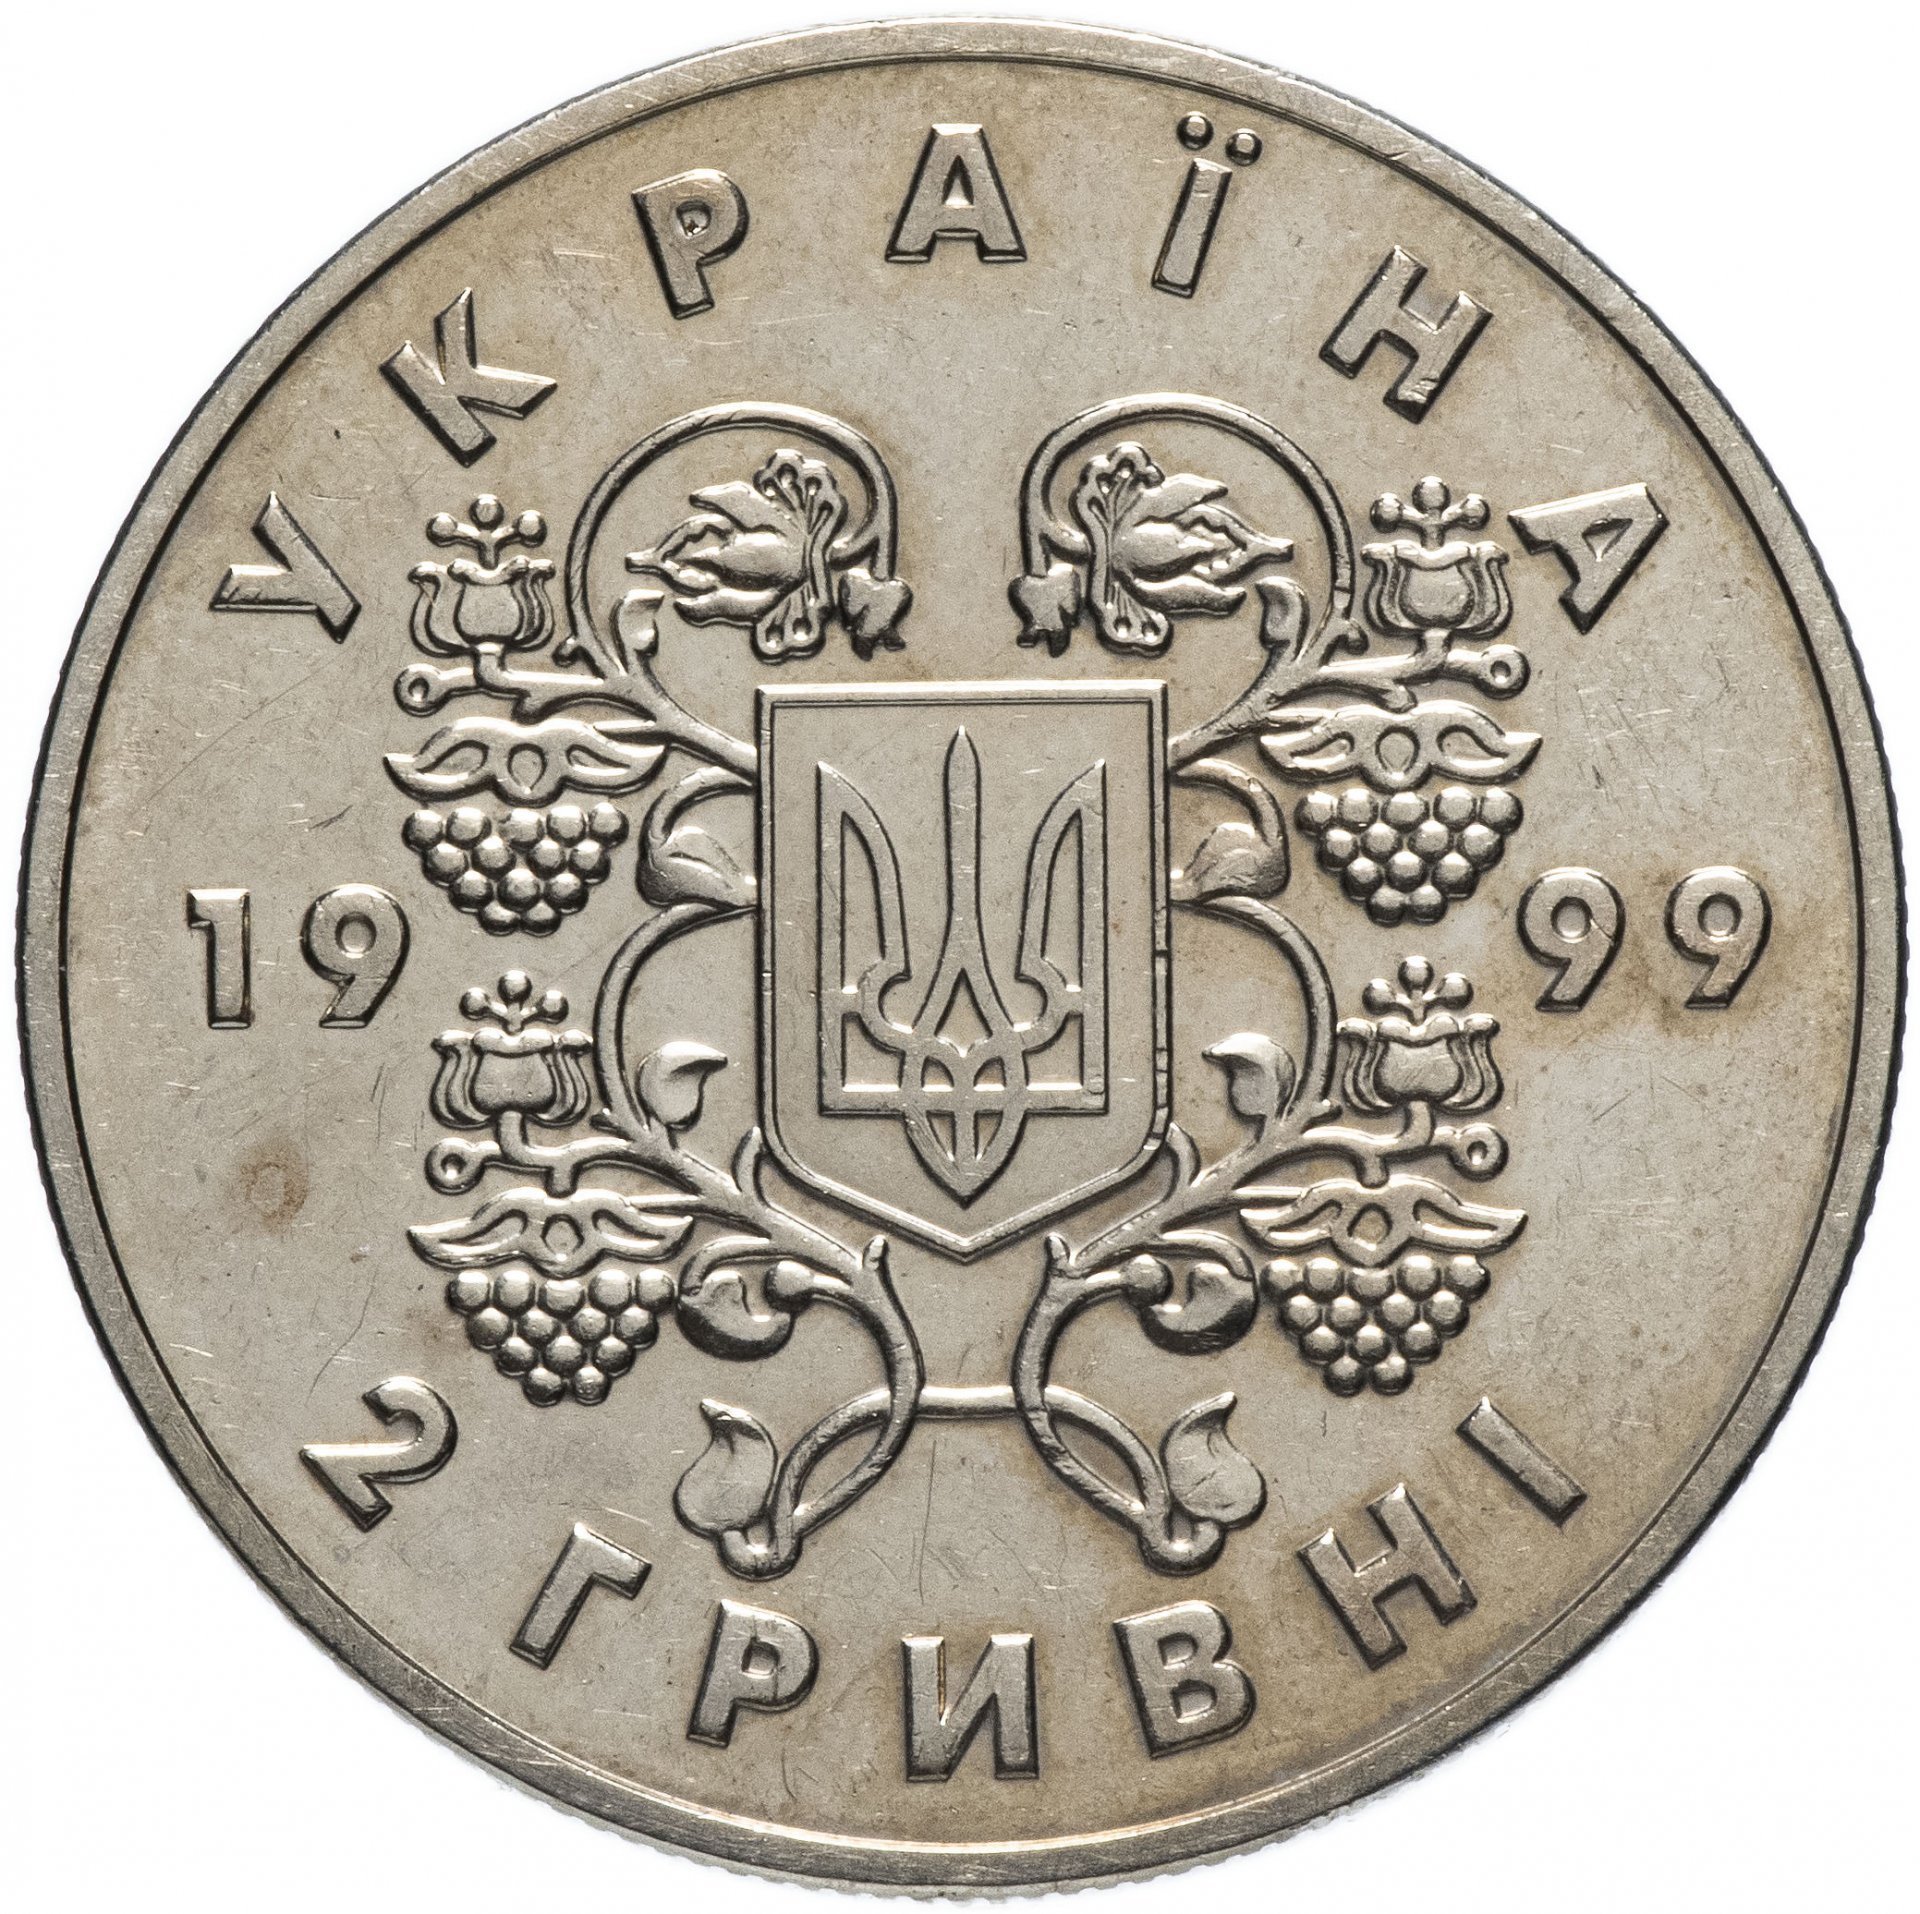 1 гривна (uah) в рублях (rub) на сегодня, сколько стоит 1 украинскую гривну в российских рублях